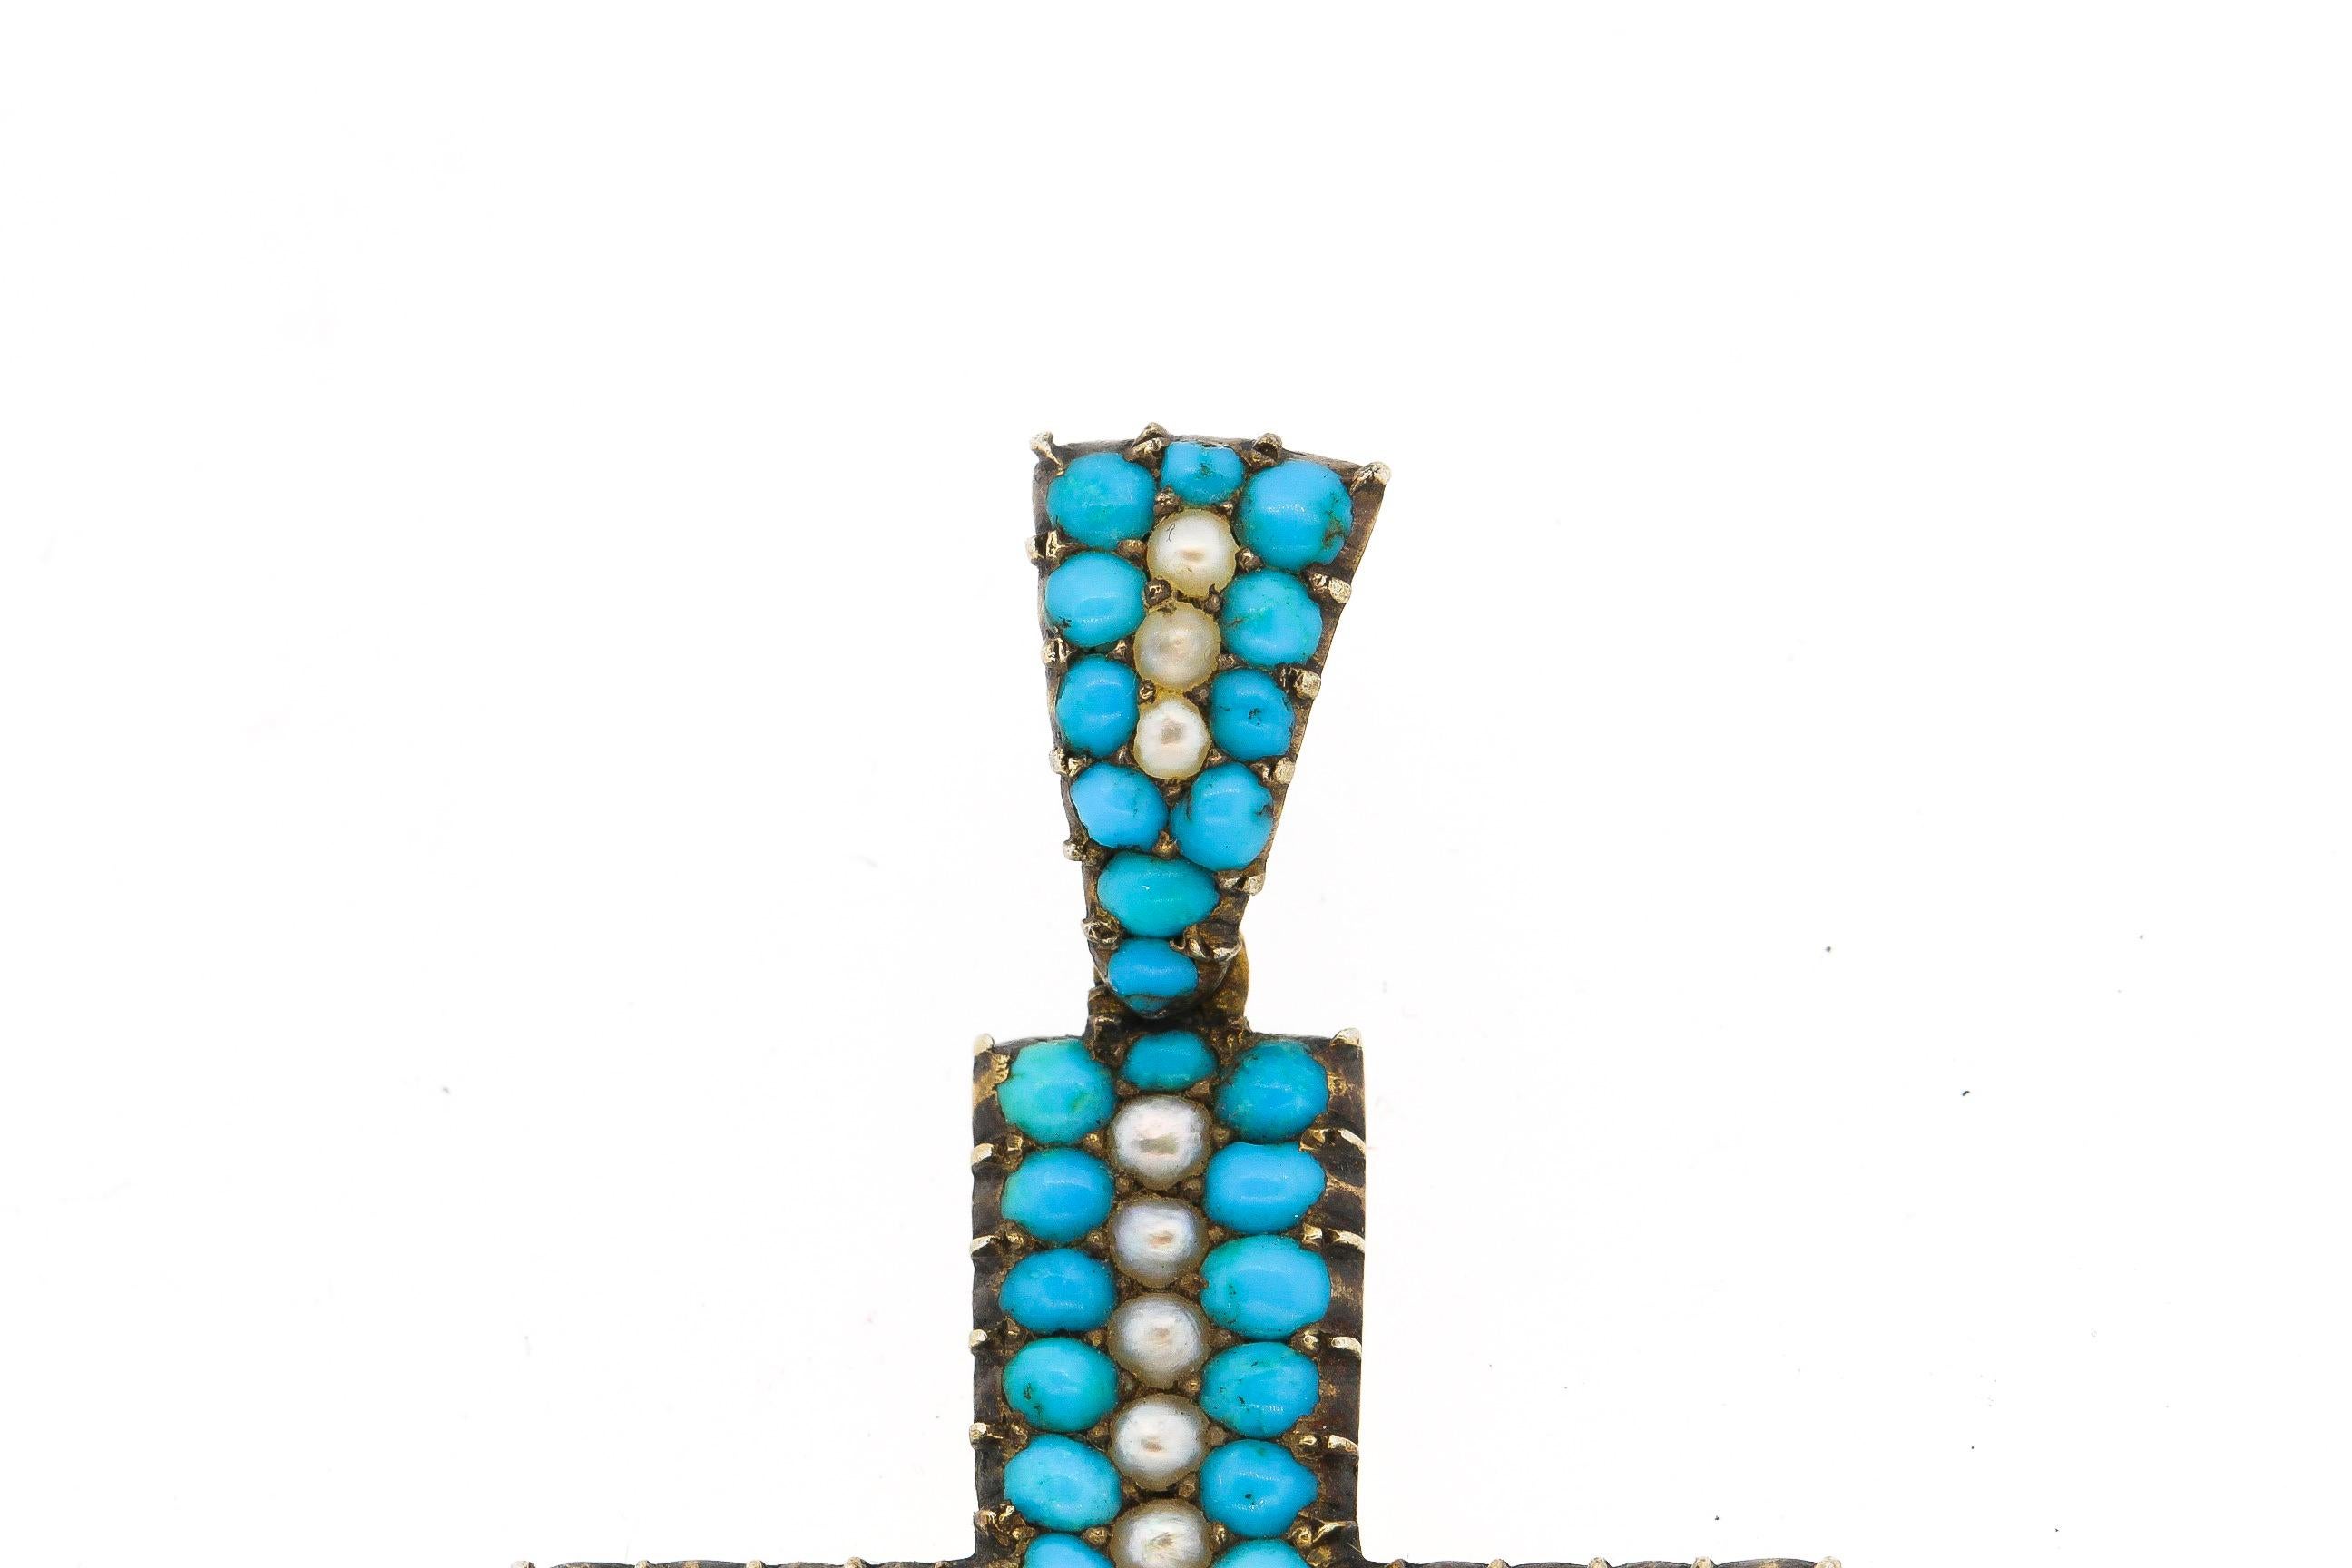 Pendentif en forme de croix en or 14k, de style victorien, avec turquoise bleue et perle fendue. Cette croix est en excellent état, sans aucune décoloration pour la turquoise et les perles sont toutes de couleur crème et blanche. La symétrie de la